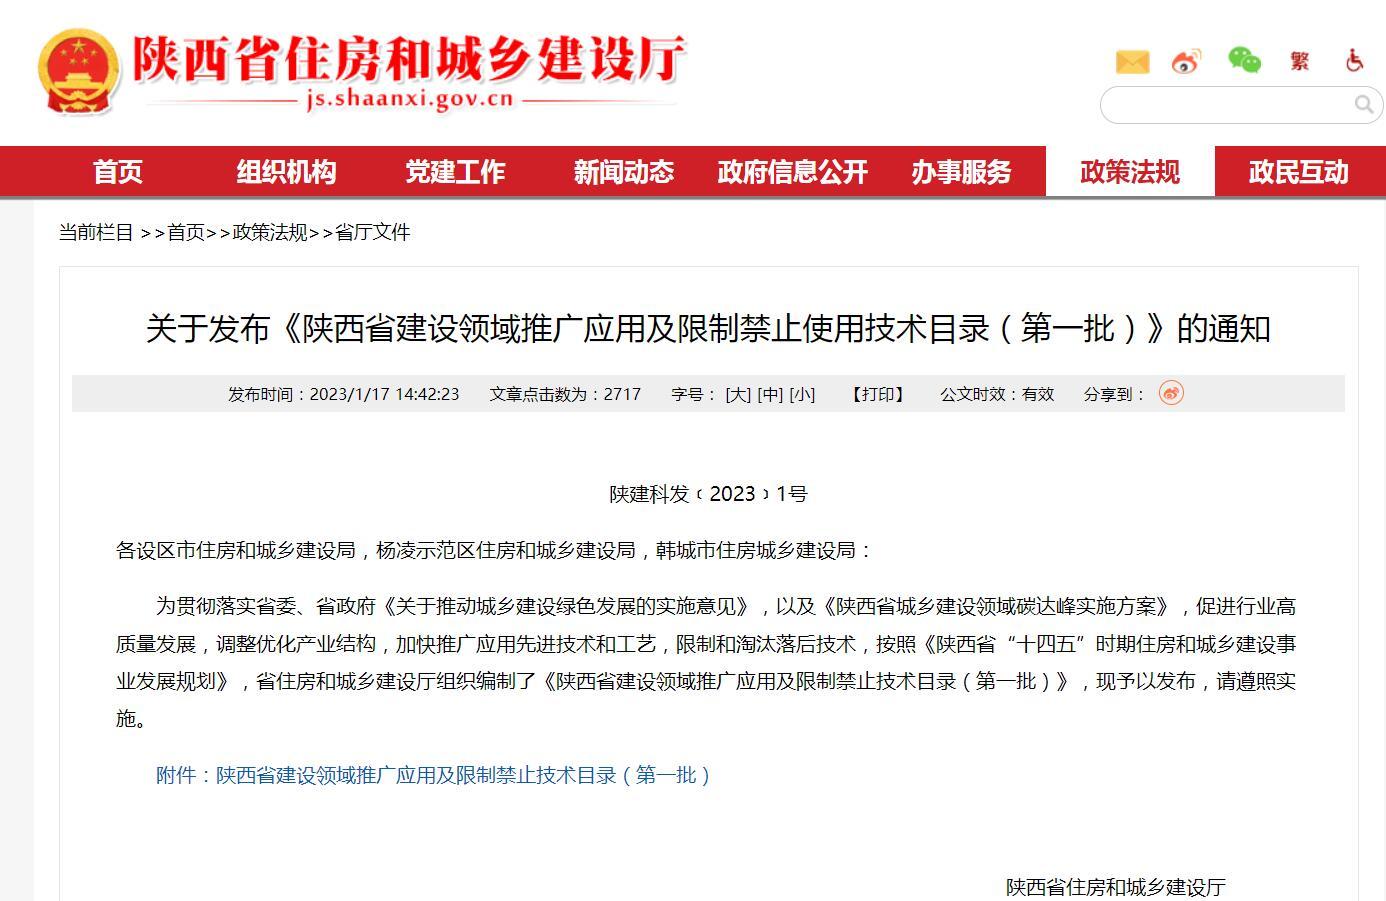 《陕西省建设领域推广应用及限制禁止使用技术目录（第一批）》